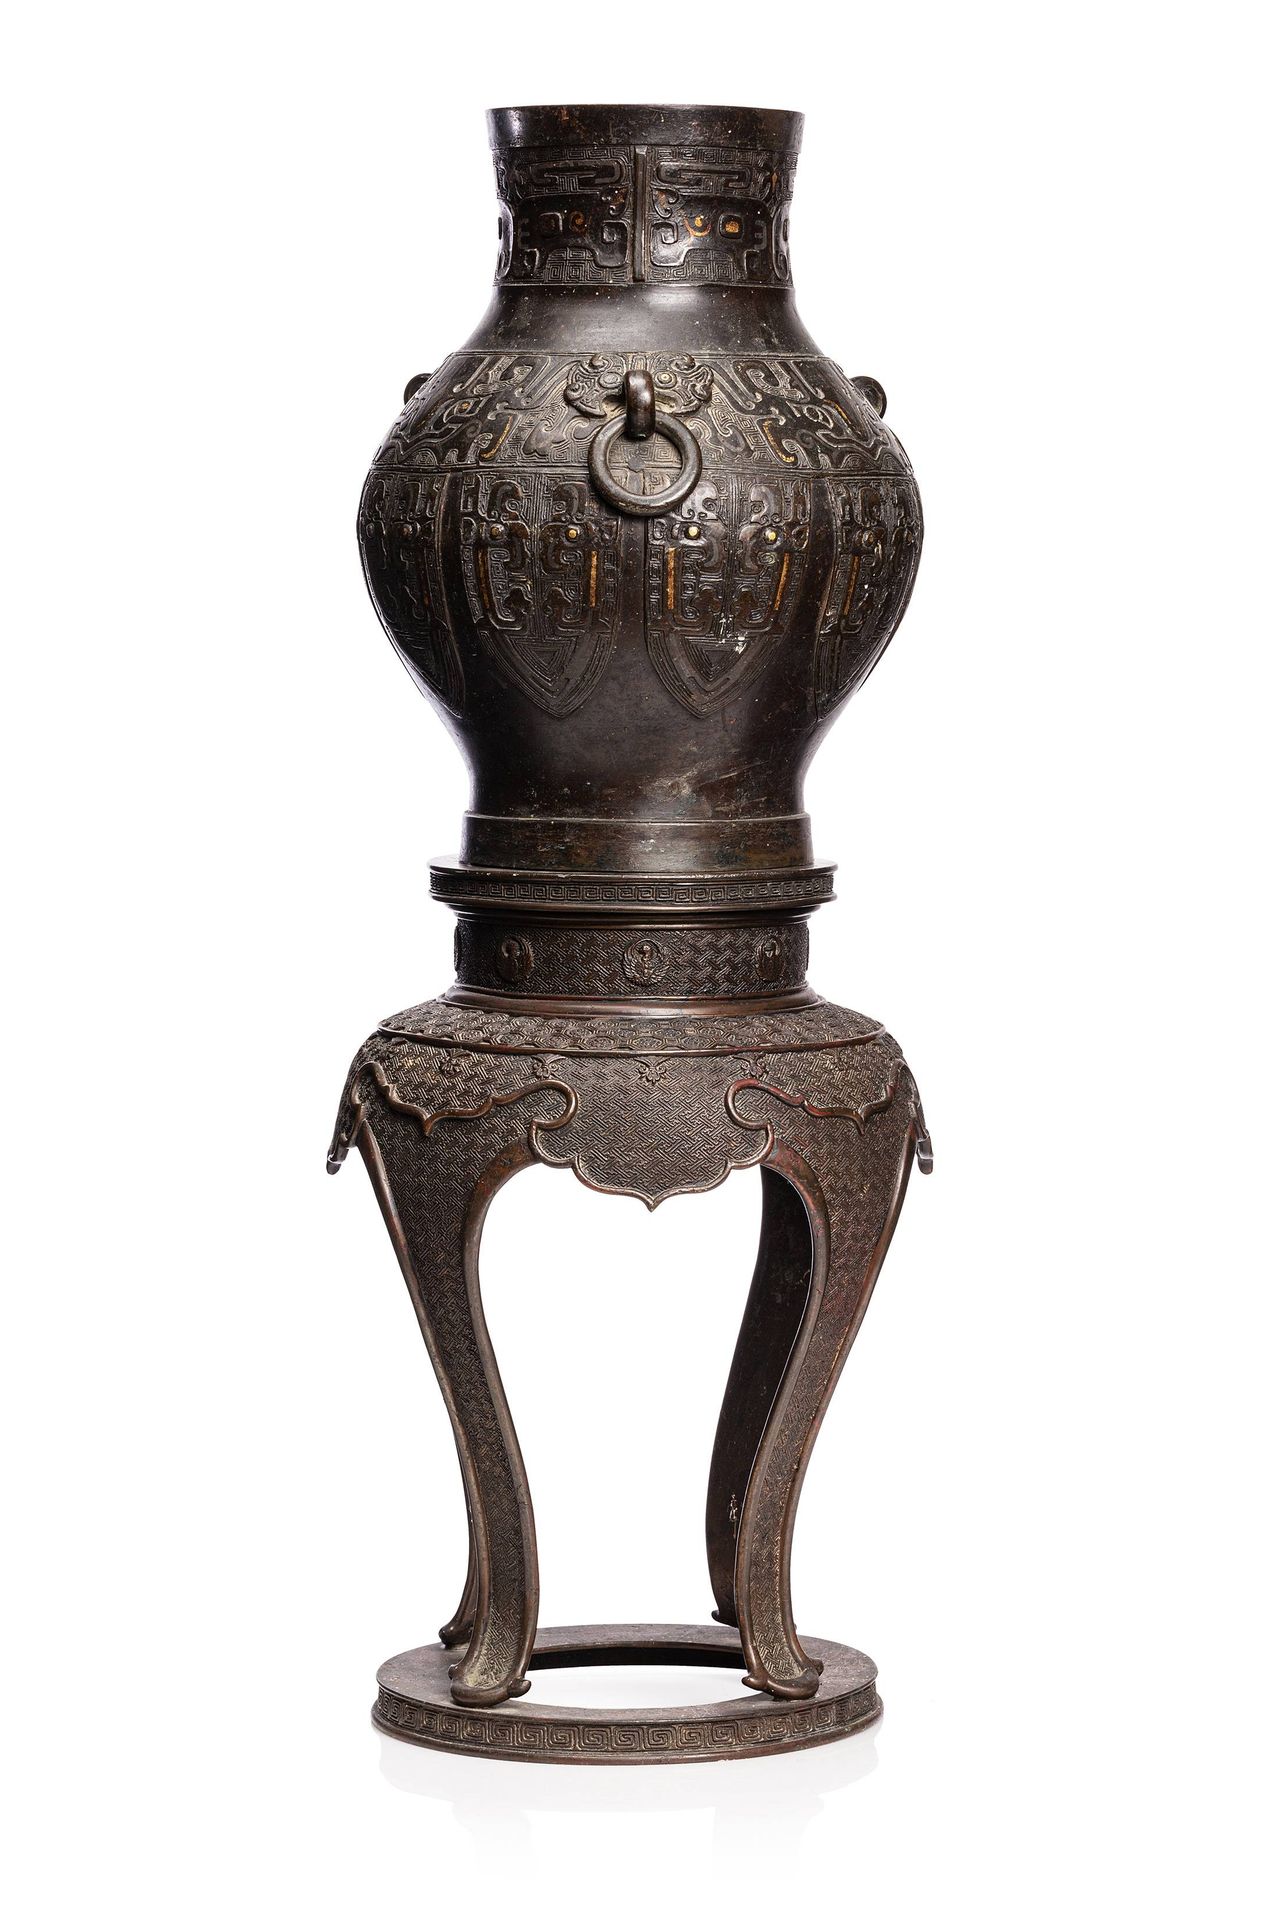 CHINE, XVIIe siècle 
一个具有棕色铜锈的古代铜瓶，装饰有饕餮面具和金银镶嵌物。





呈现在一个后来的日本青铜支架上。








&hellip;